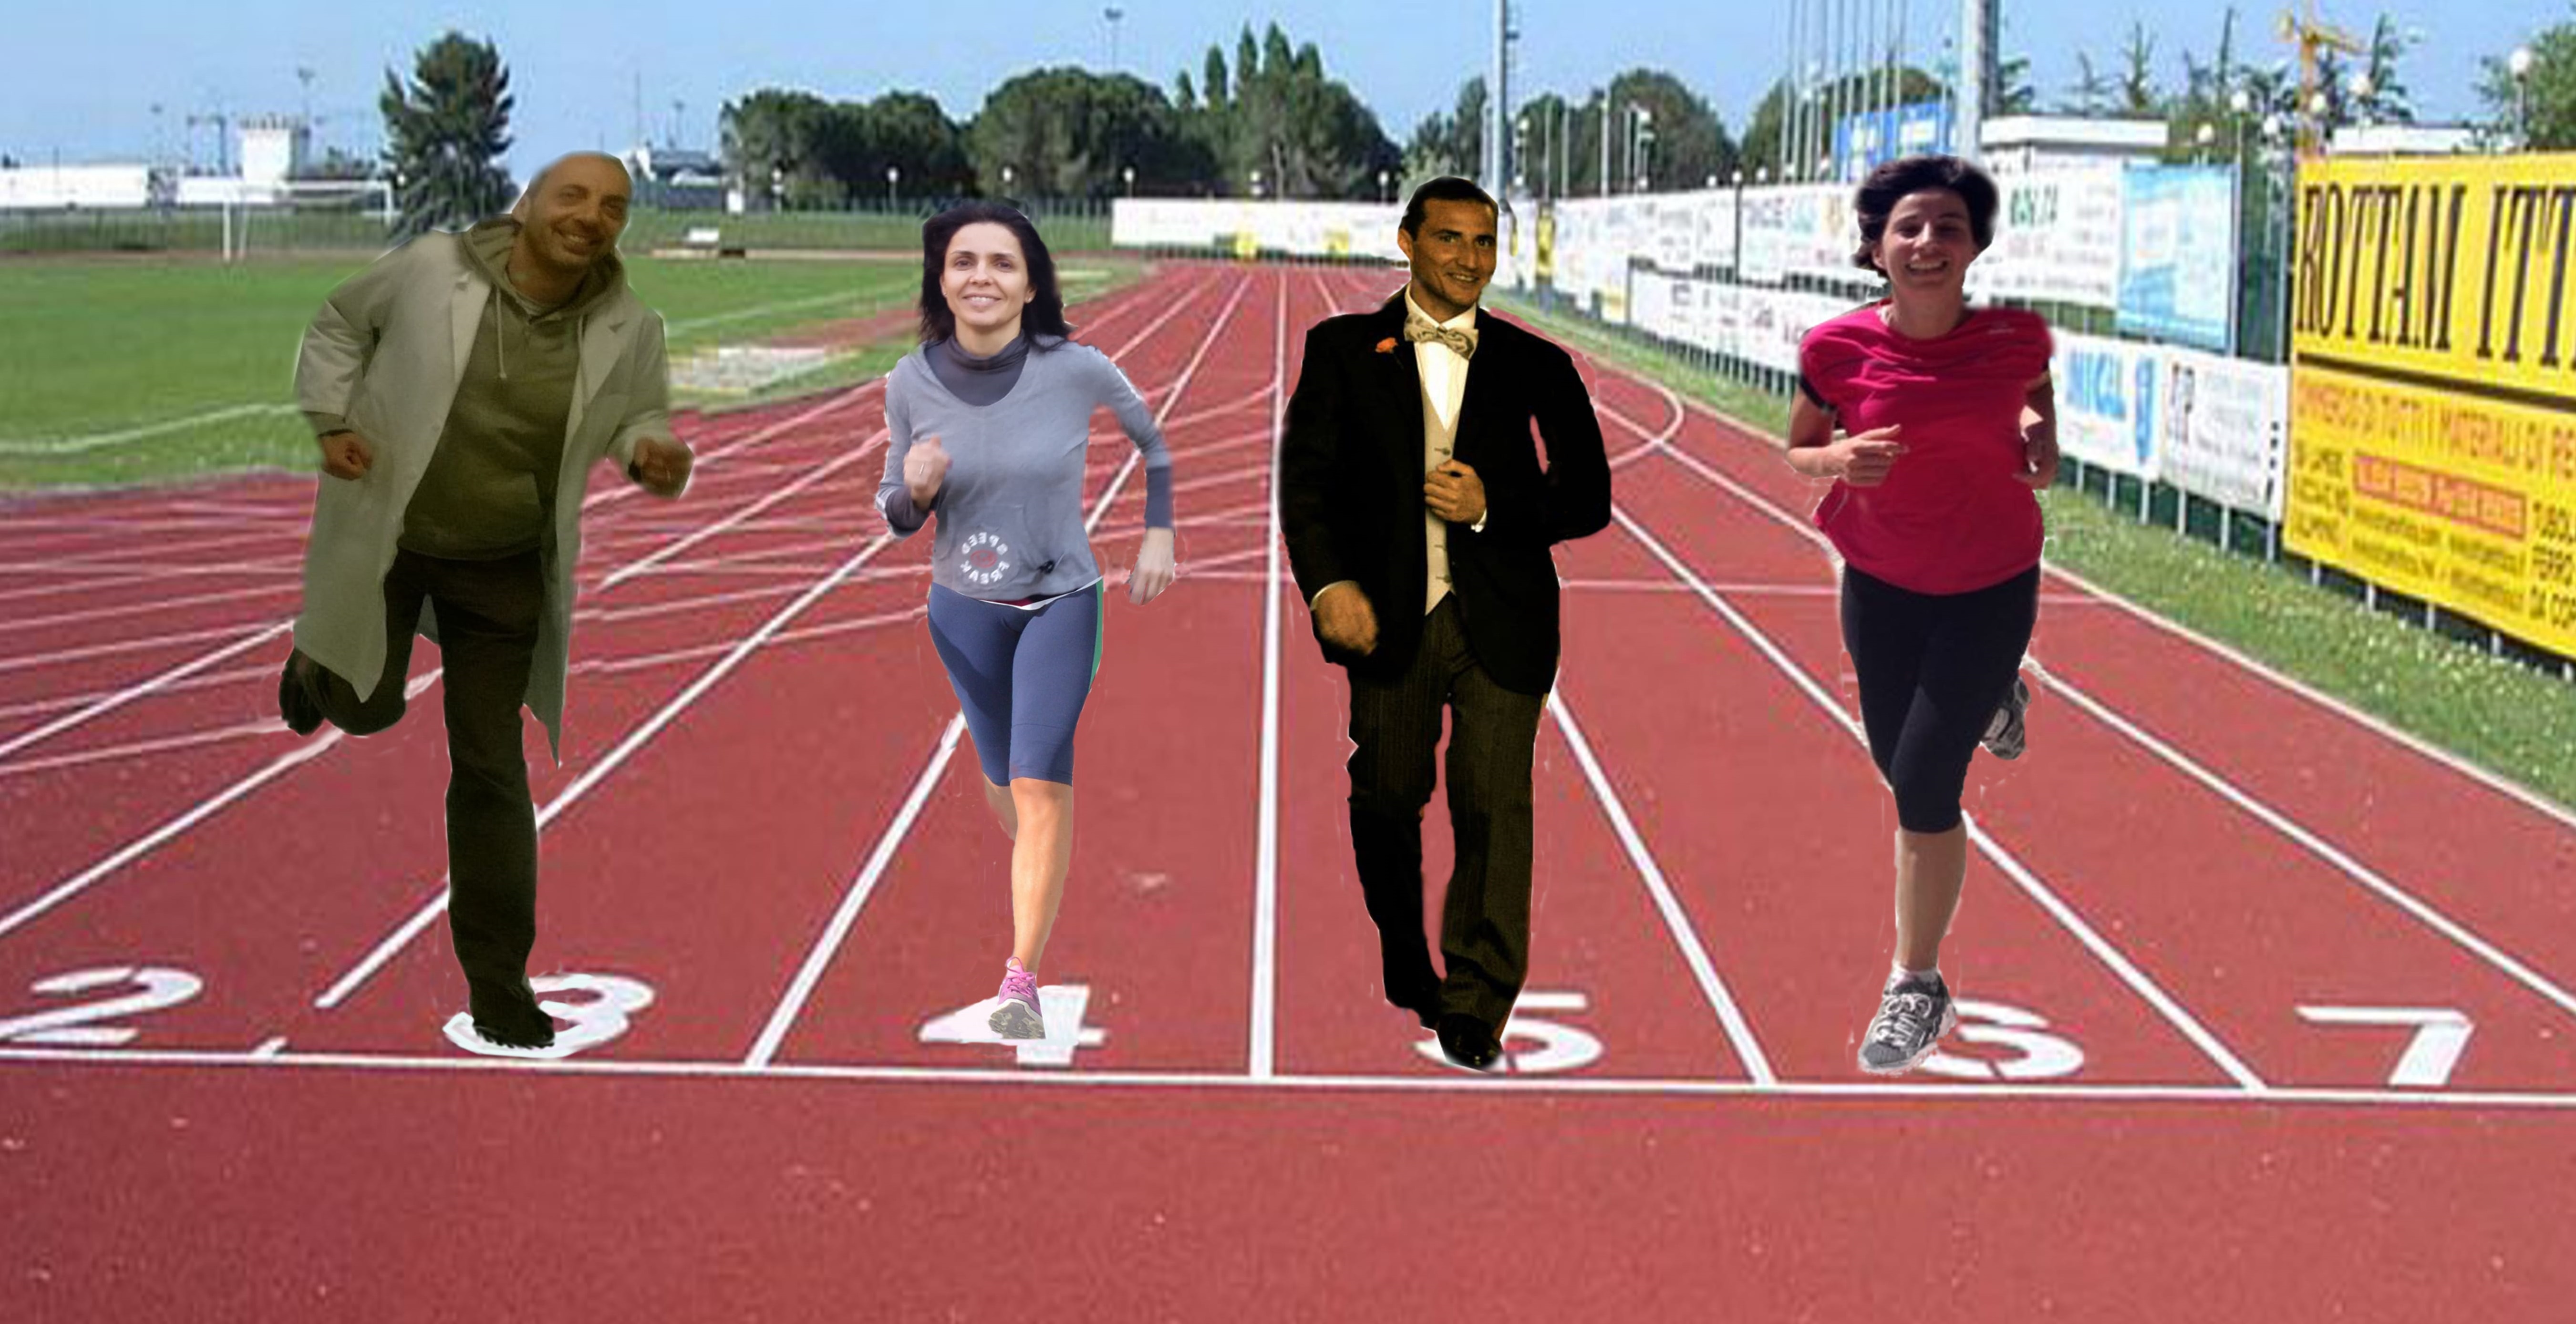 corro quando voglio-Silvia, Francesca, Stefano e Renato